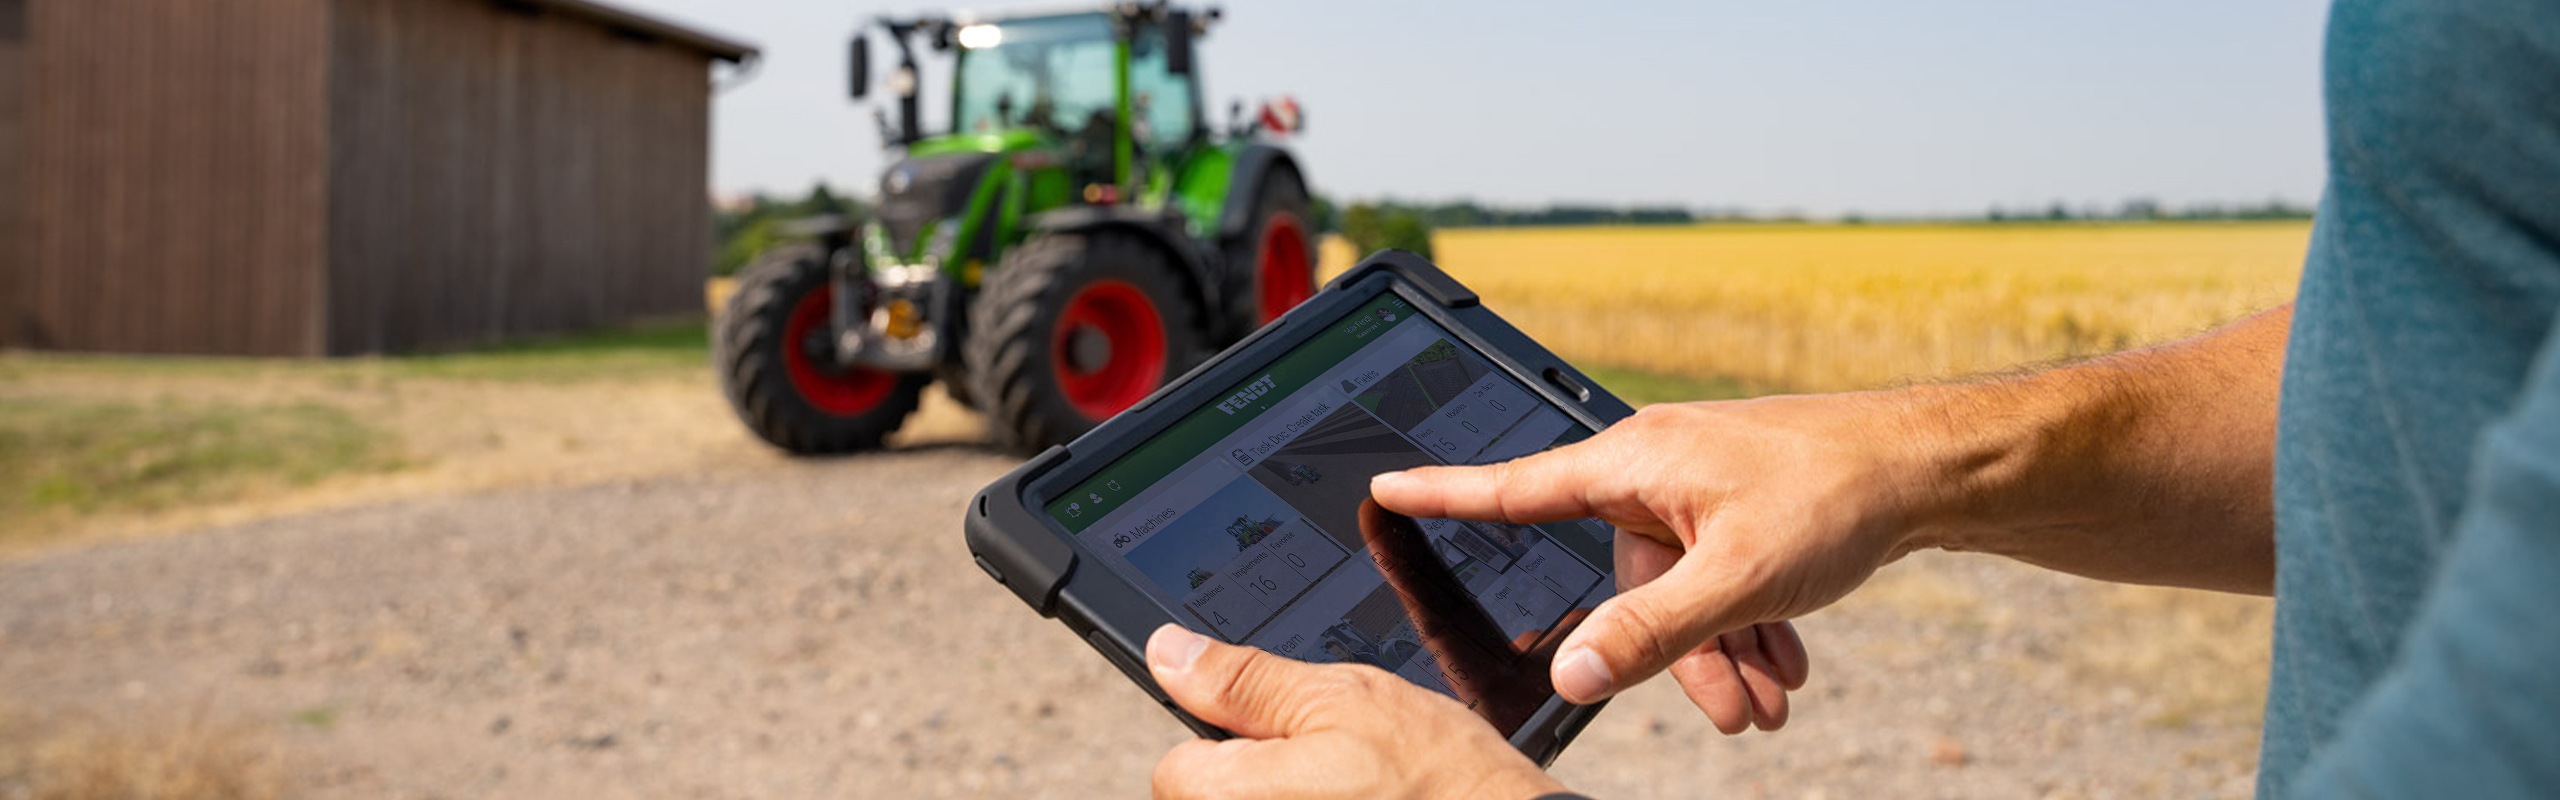 Ein Landwirt hält ein Tablet, auf dem FendtONE offboard geöffnet ist, in der Hand. Im Hintergrund steht ein Traktor.